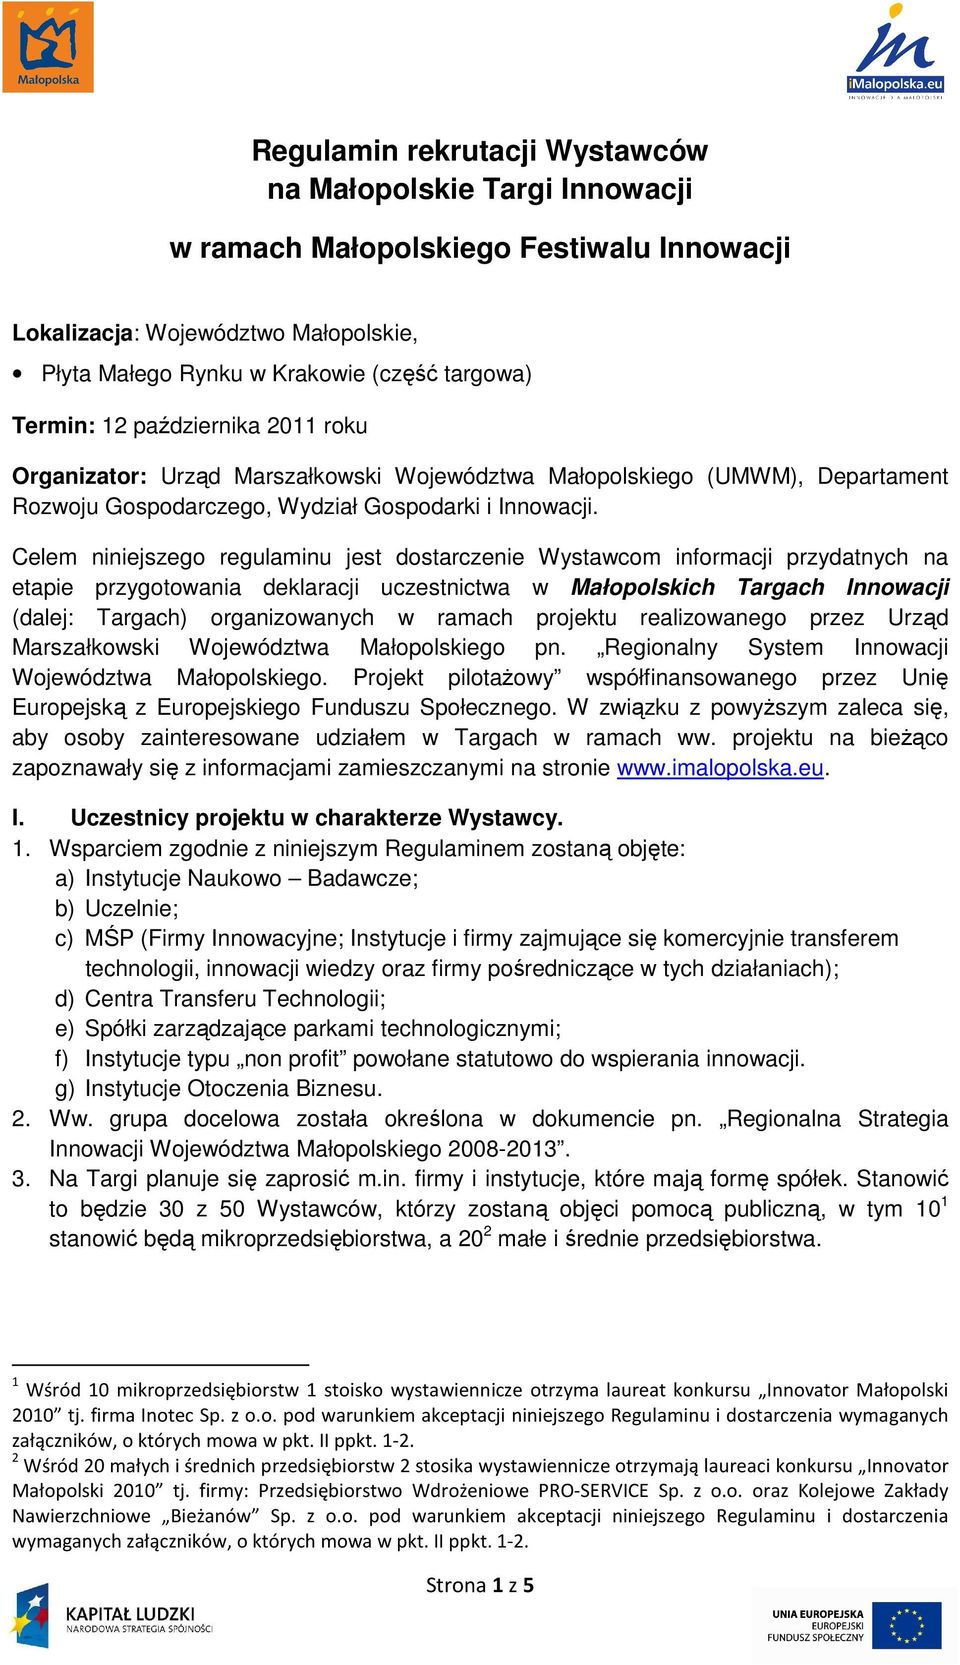 Celem niniejszego regulaminu jest dostarczenie Wystawcom informacji przydatnych na etapie przygotowania deklaracji uczestnictwa w Małopolskich Targach Innowacji (dalej: Targach) organizowanych w